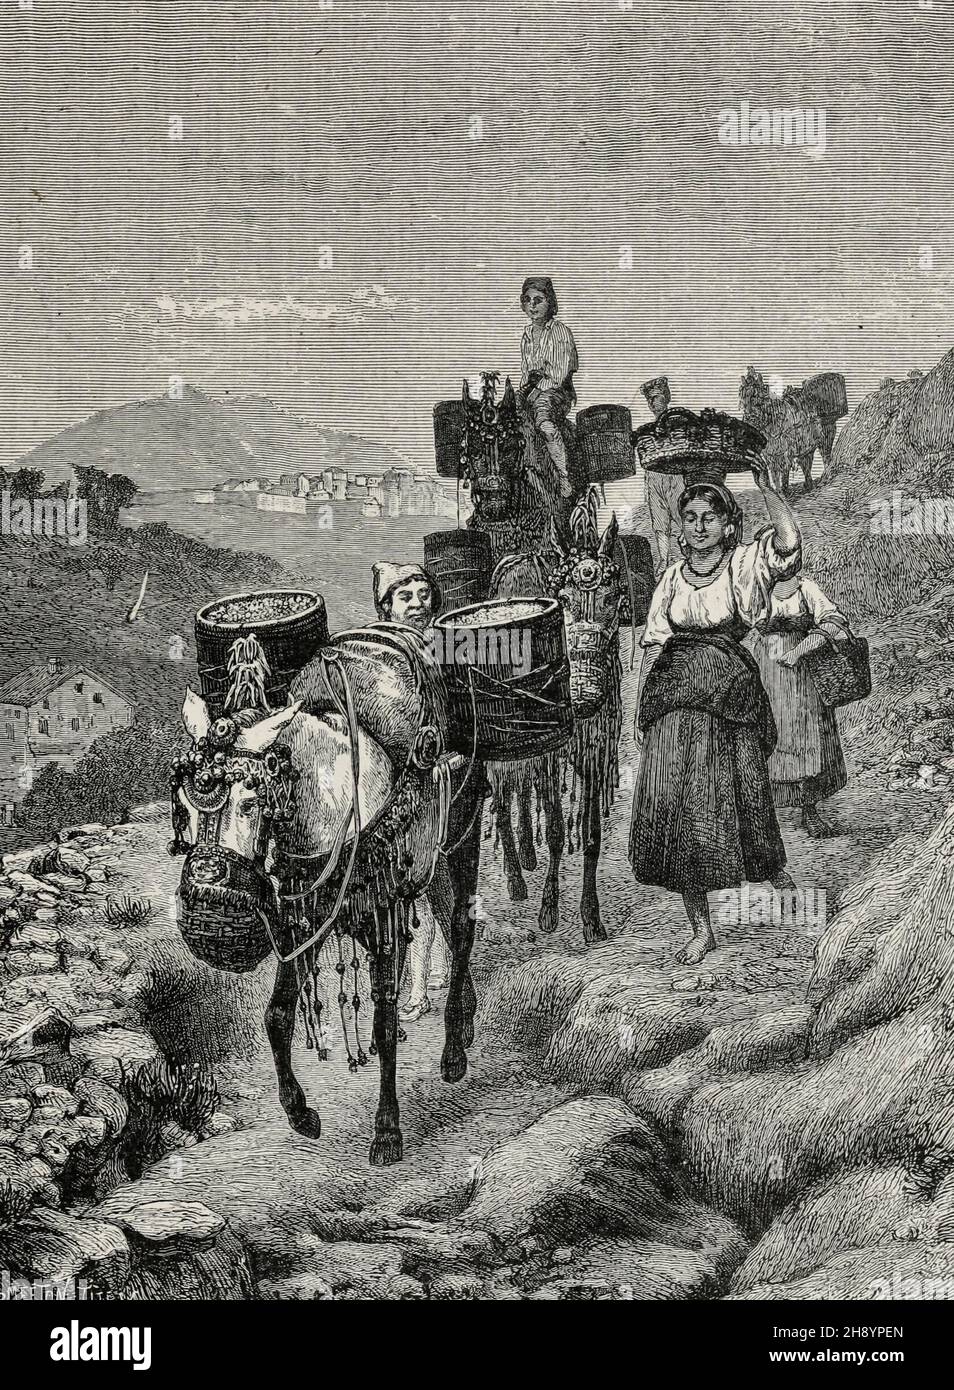 A vintage scene in Catalonia, Spain, circa 1900 Stock Photo